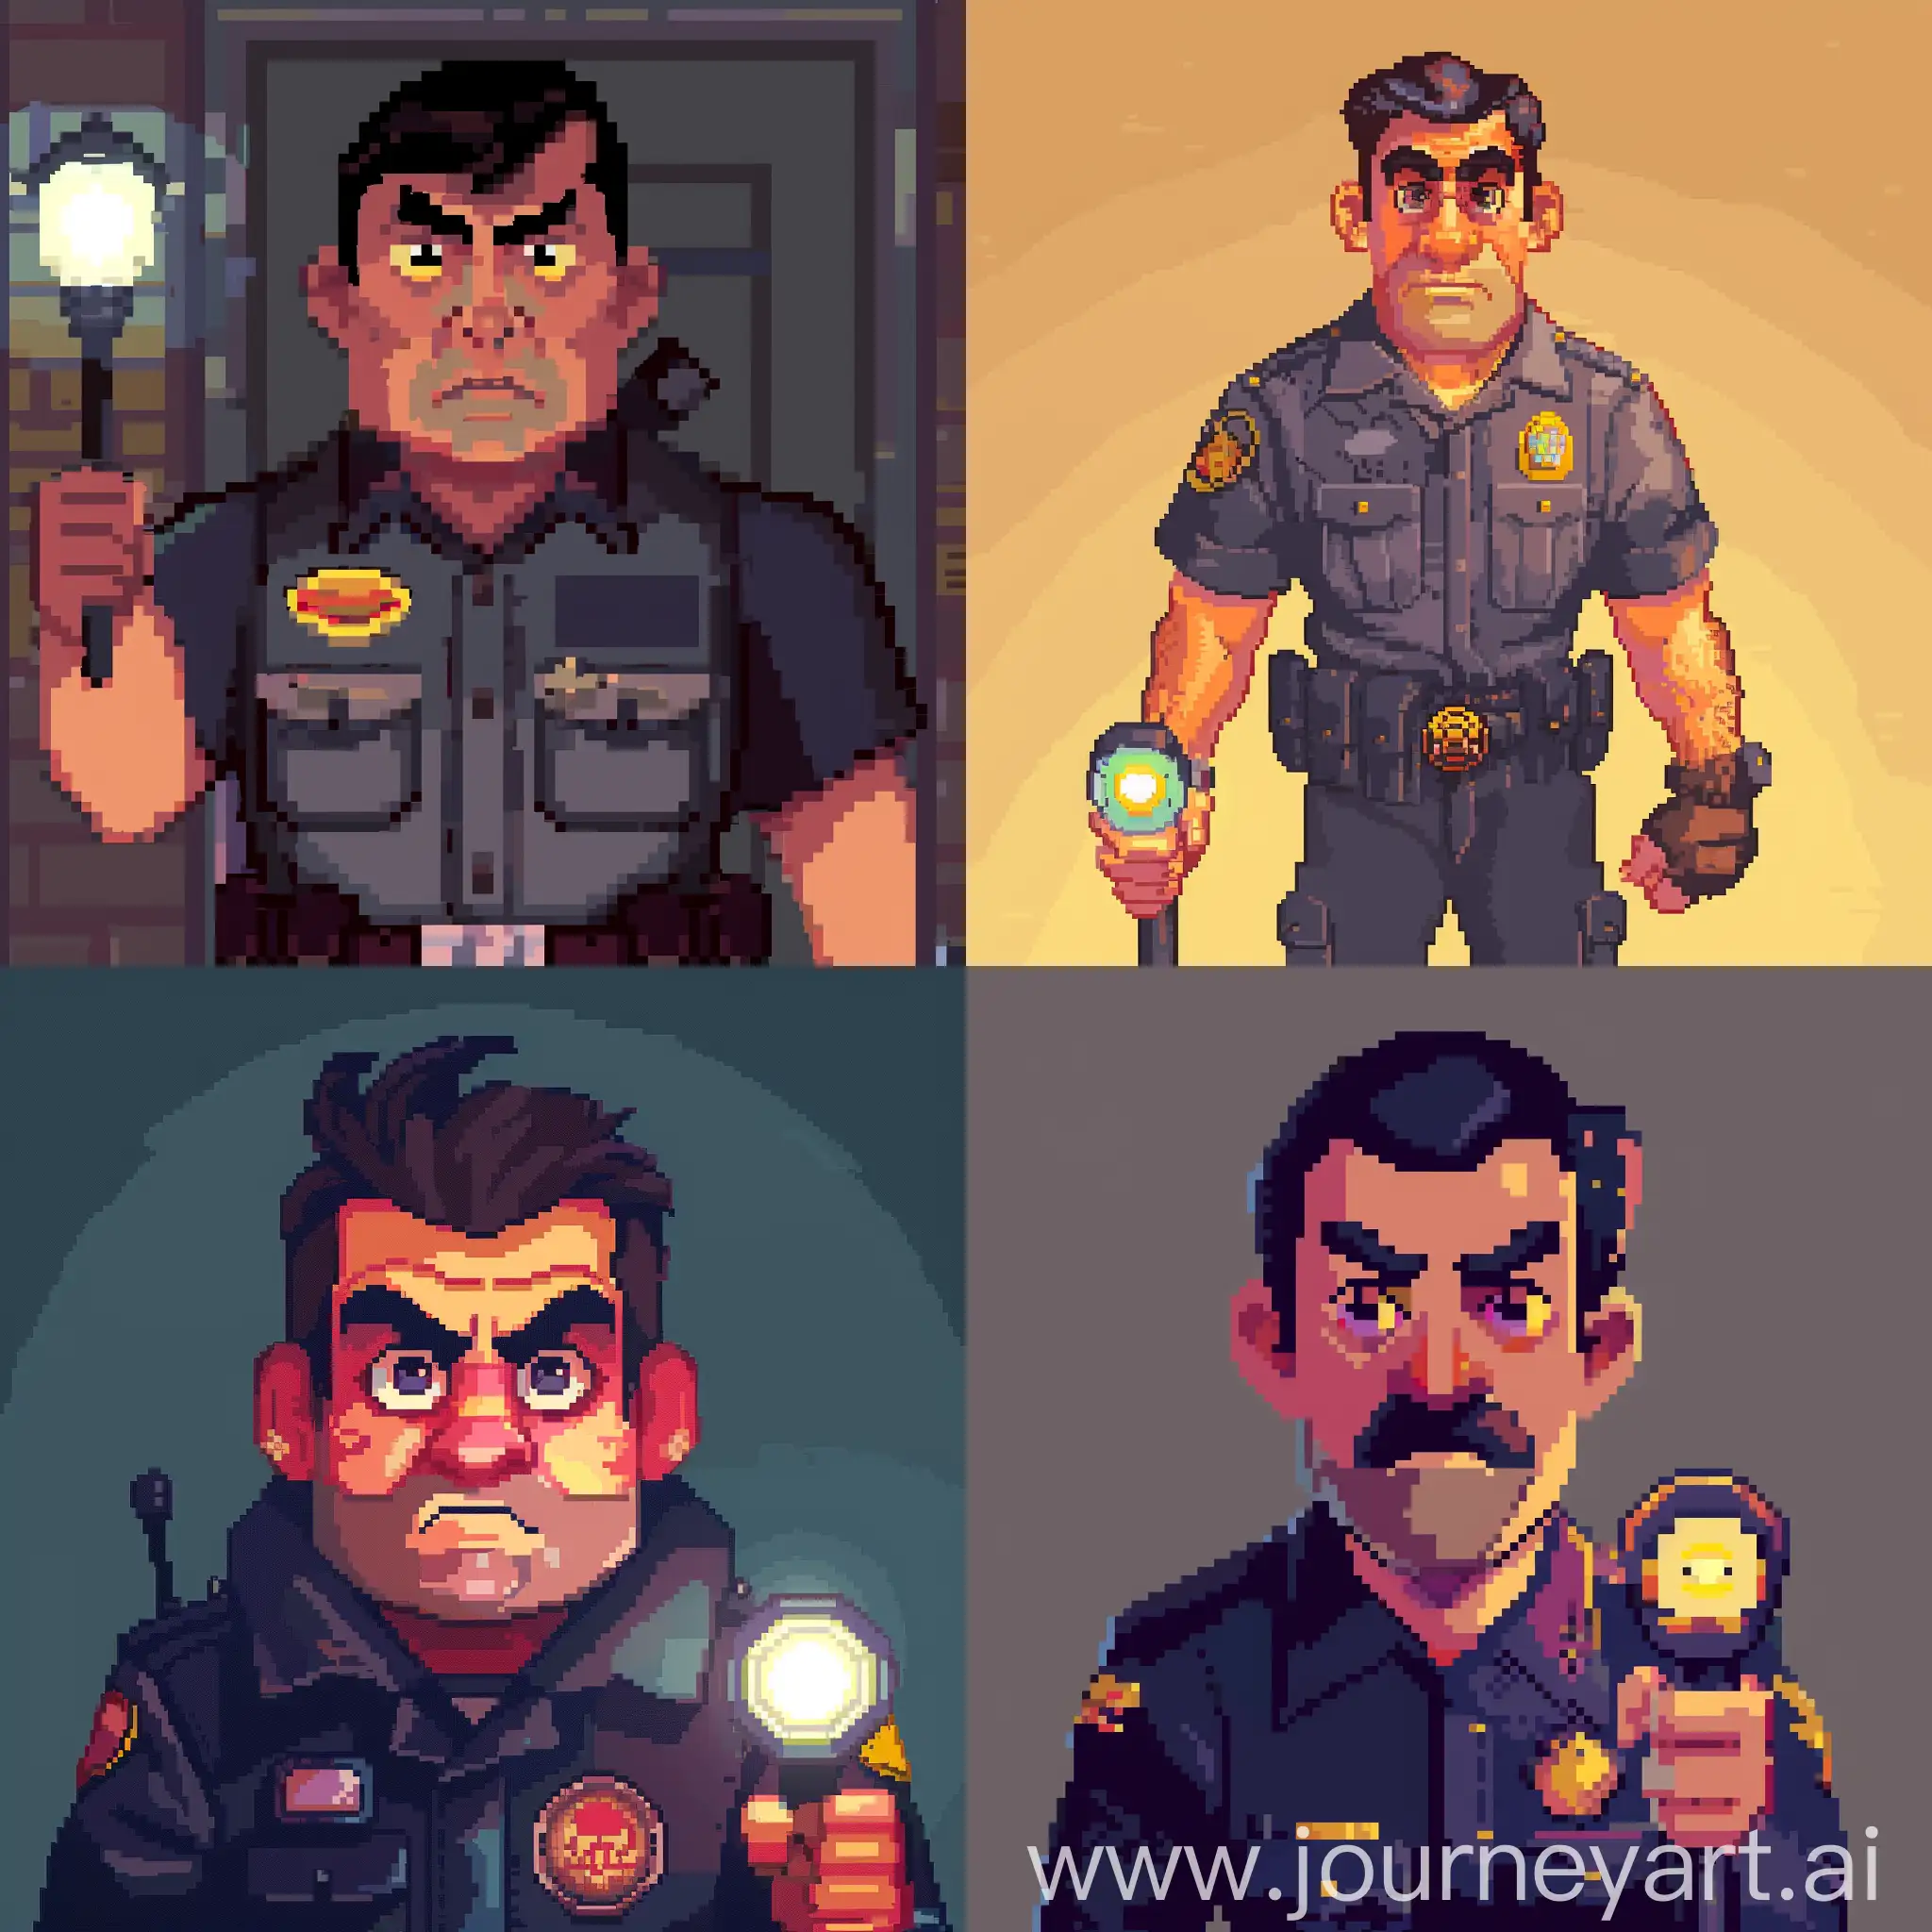 Создай пиксельное изображение Марка, бывшего охранника пиццерии, в стиле ретро-видеоигры. Он должен быть изображен в униформе охранника, с фонариком в руке и настороженным выражением лица.